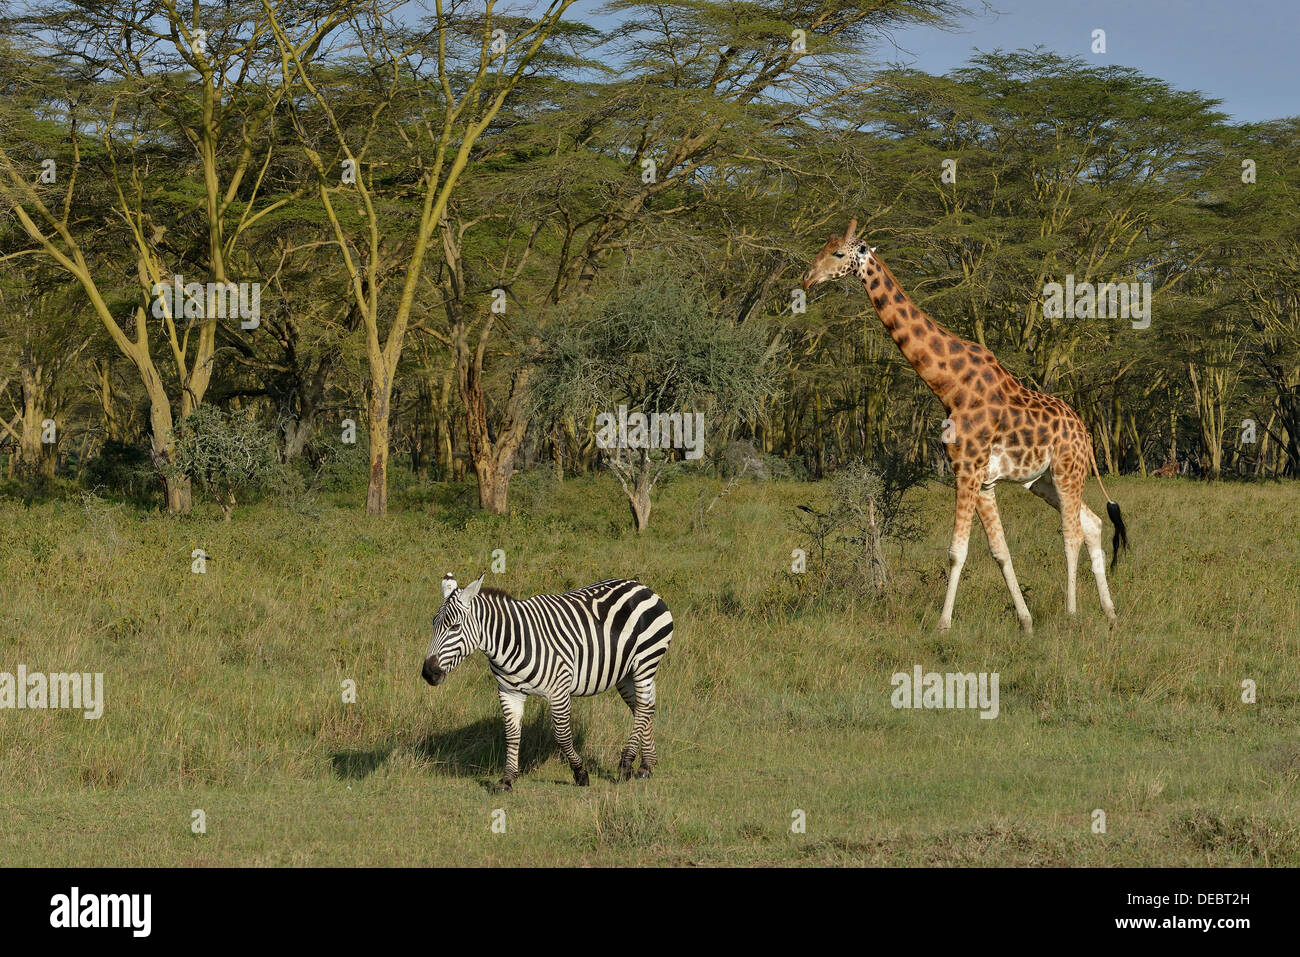 Girafe Rothschild ougandais ou Girafe (Giraffa camelopardalis rothschildi) et le zèbre de Grant (Equus quagga boehmi) Banque D'Images